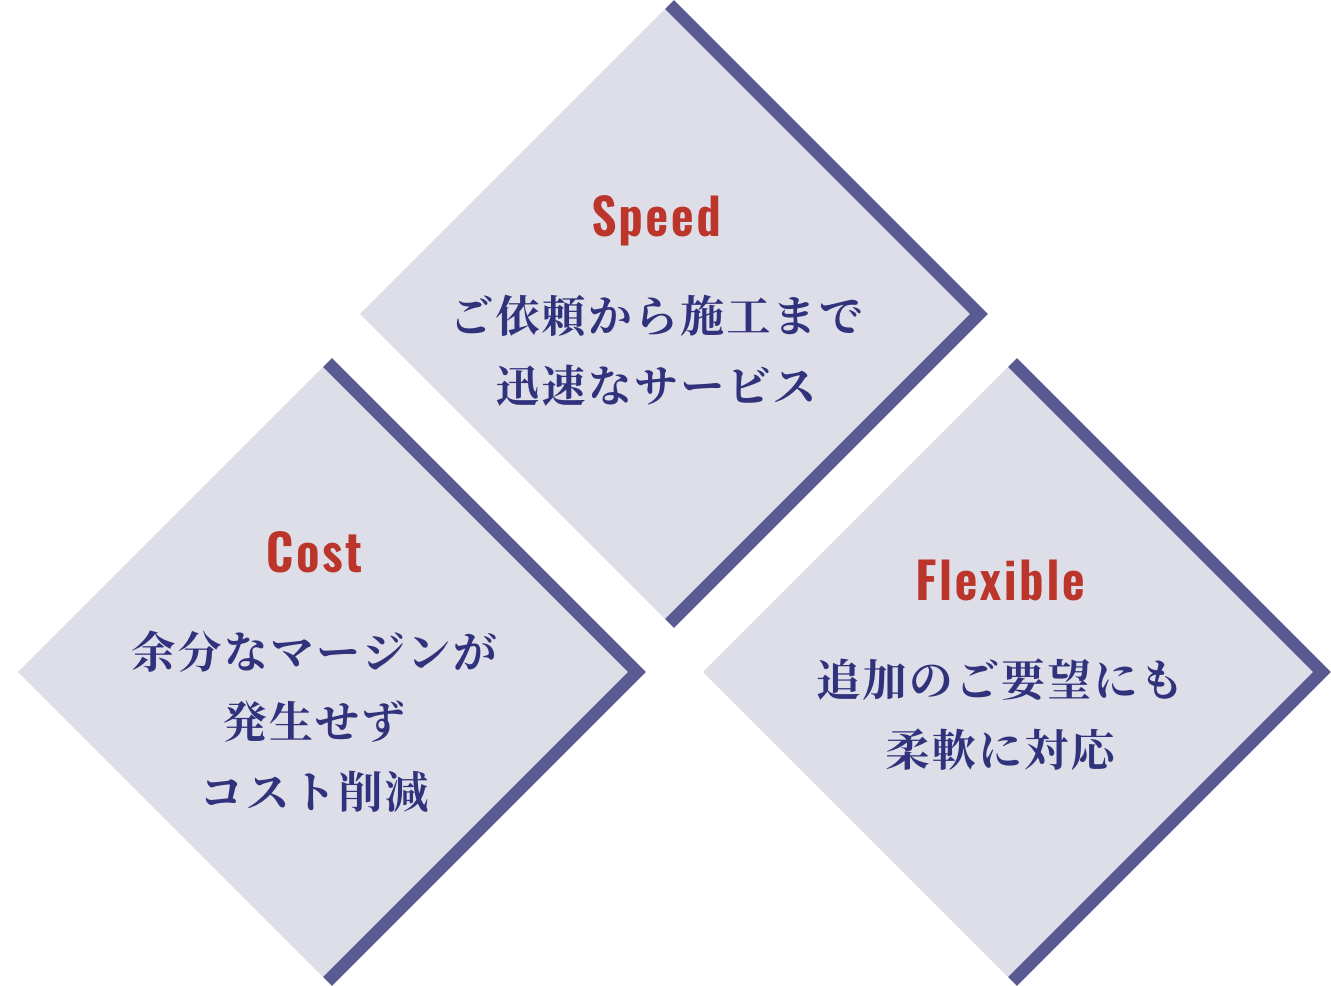 Speed ご依頼から施工まで迅速なサービス Cost 余分なマージンが発生せずコスト削減 Flexible 追加のご要望にも柔軟に対応